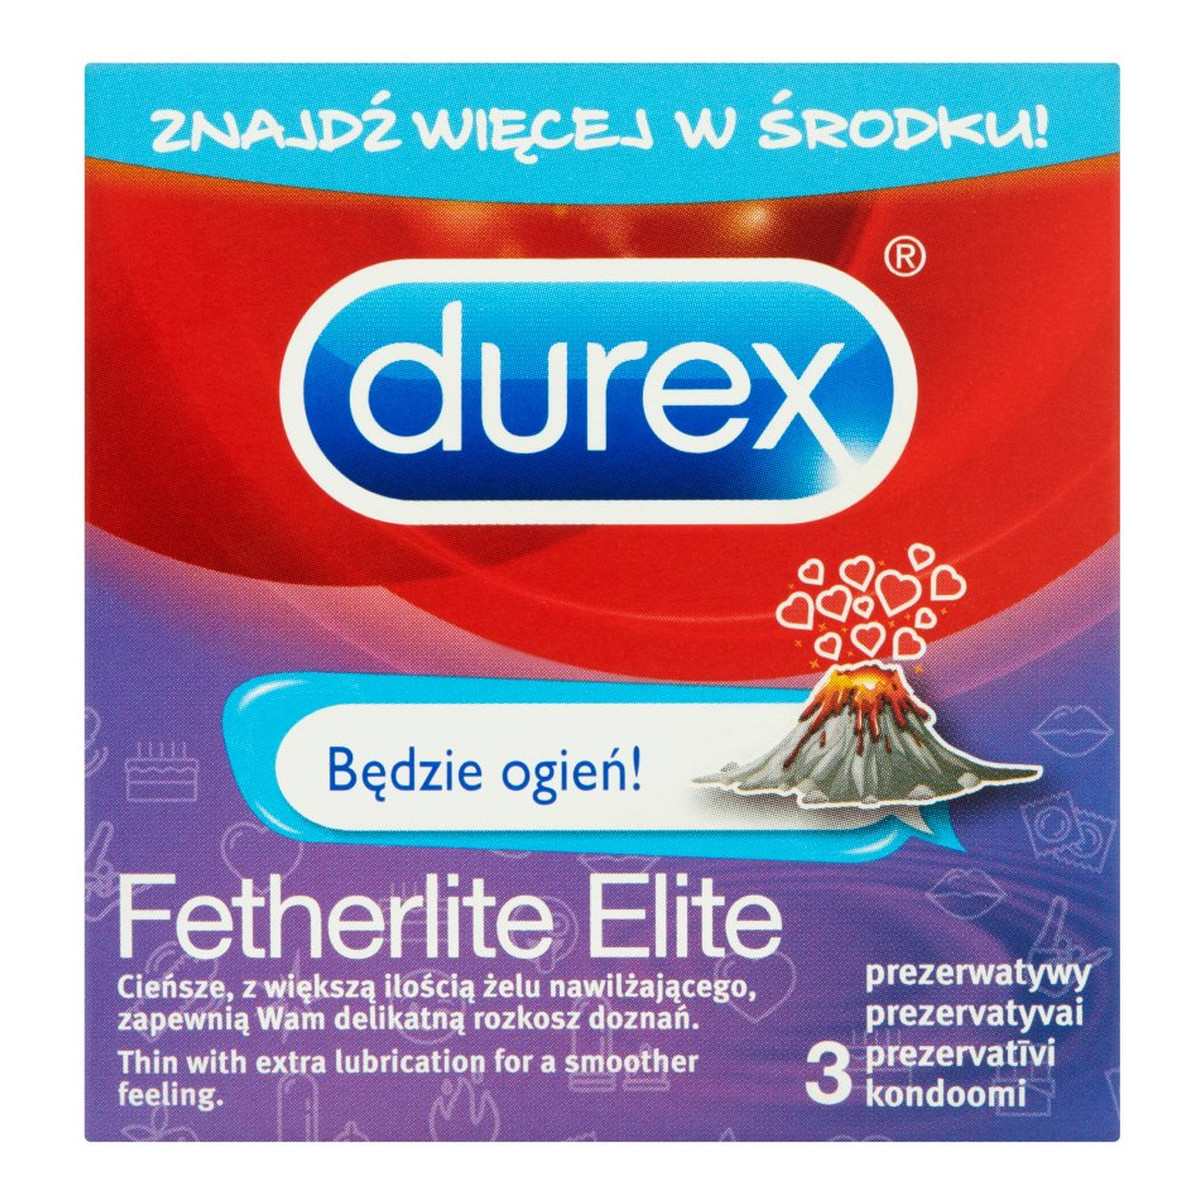 Durex Fetherlite Elite Będzie ogień! Prezerwatywy 3 sztuki